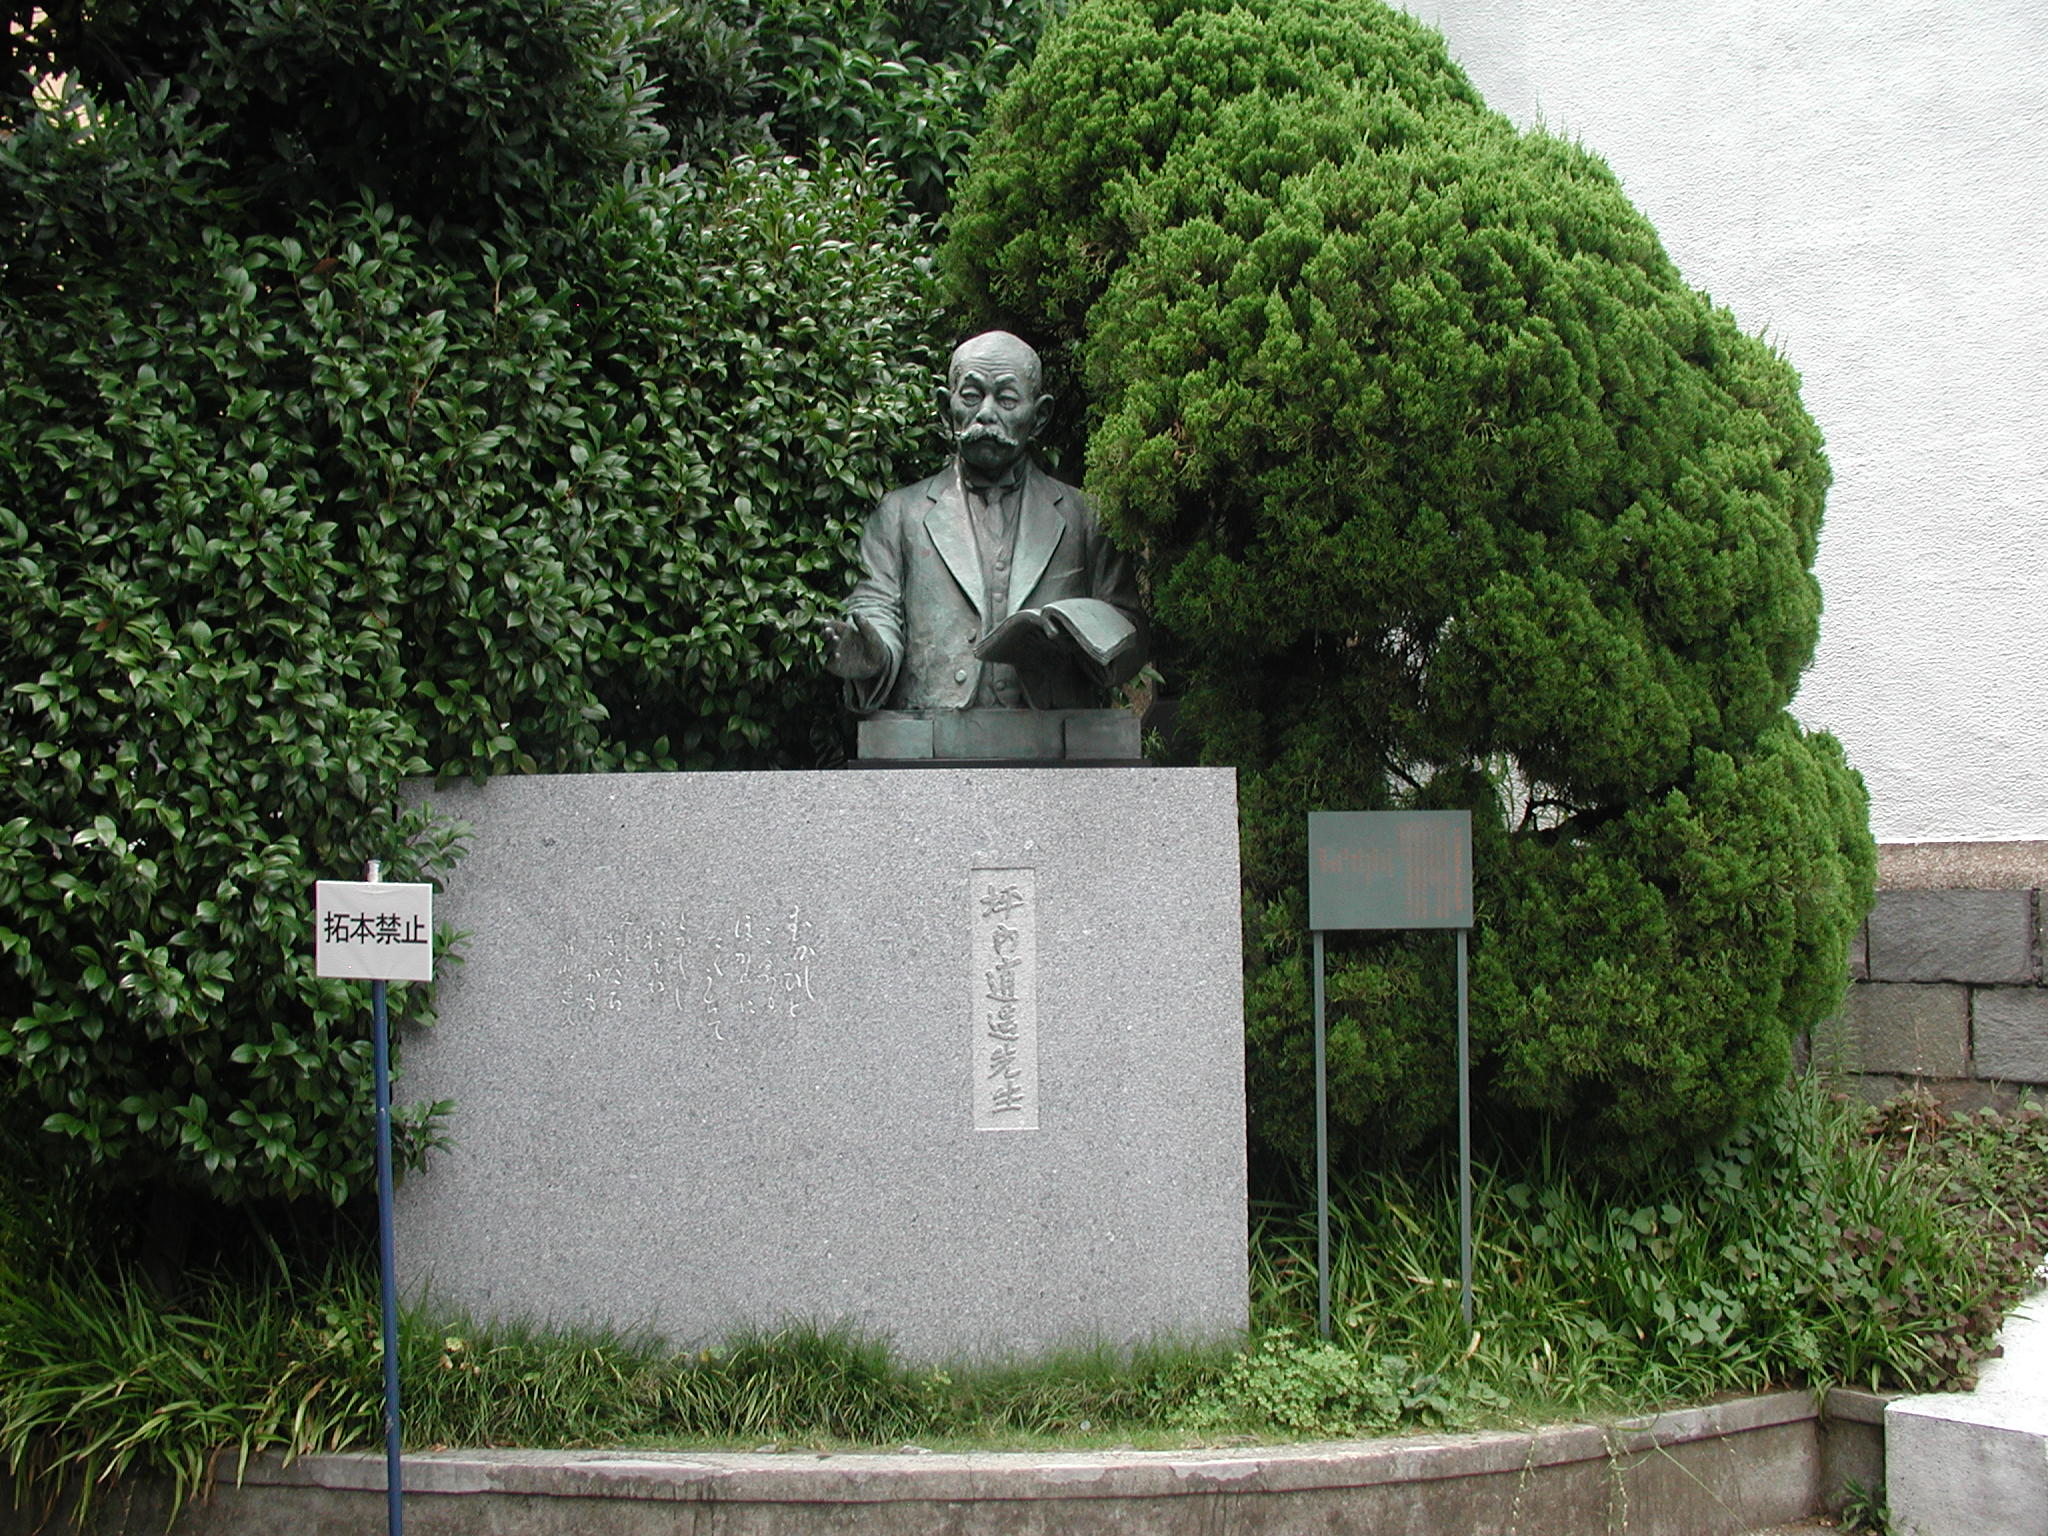 Waseda University- Tokyo, Japan (August 2005)